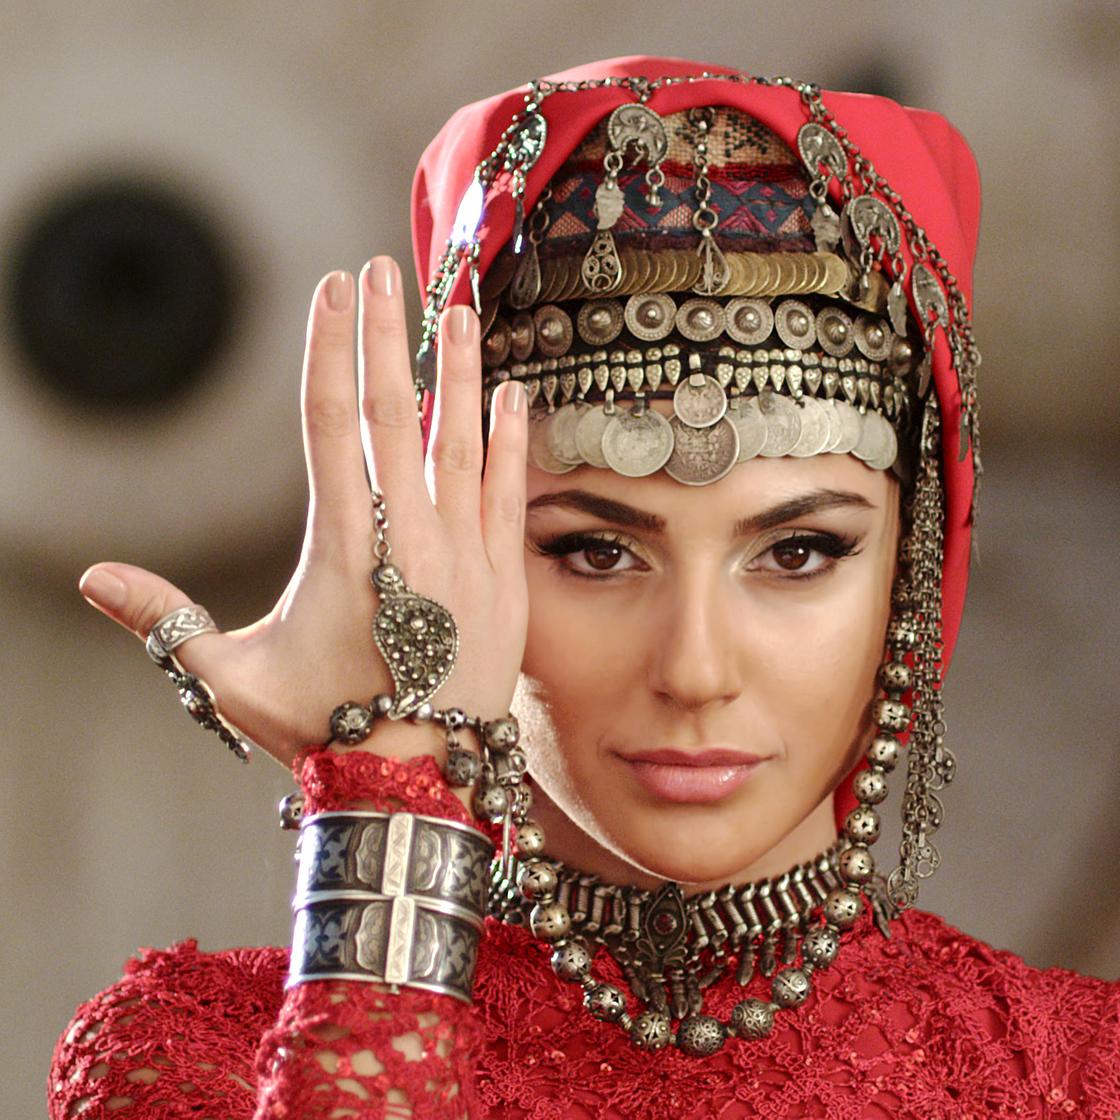 Армянский волосатый пирожок » Сервер Цыганской Принцессы Габурич